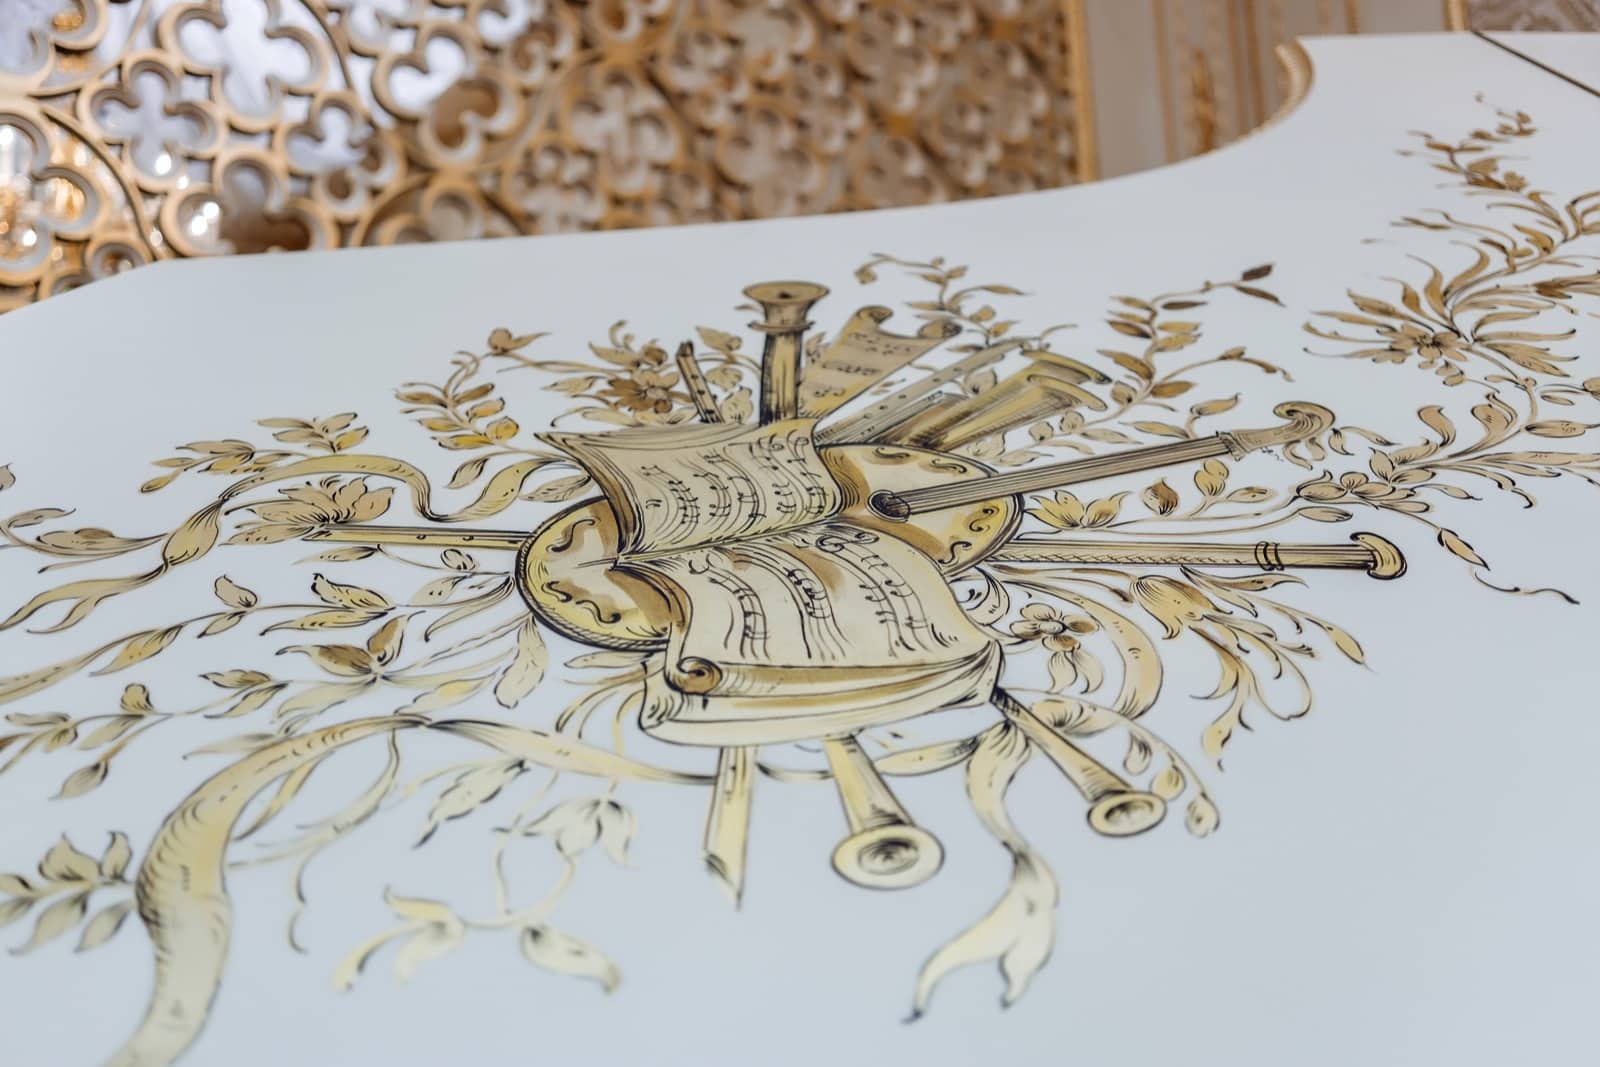 řemeslné zpracování ručně malované vzory detaily elegantní malba zlatý list aplikace řemeslníci italské výroby dekorativní nápdy řešení pro luxusní domov královská vila rezidenční palác projekt